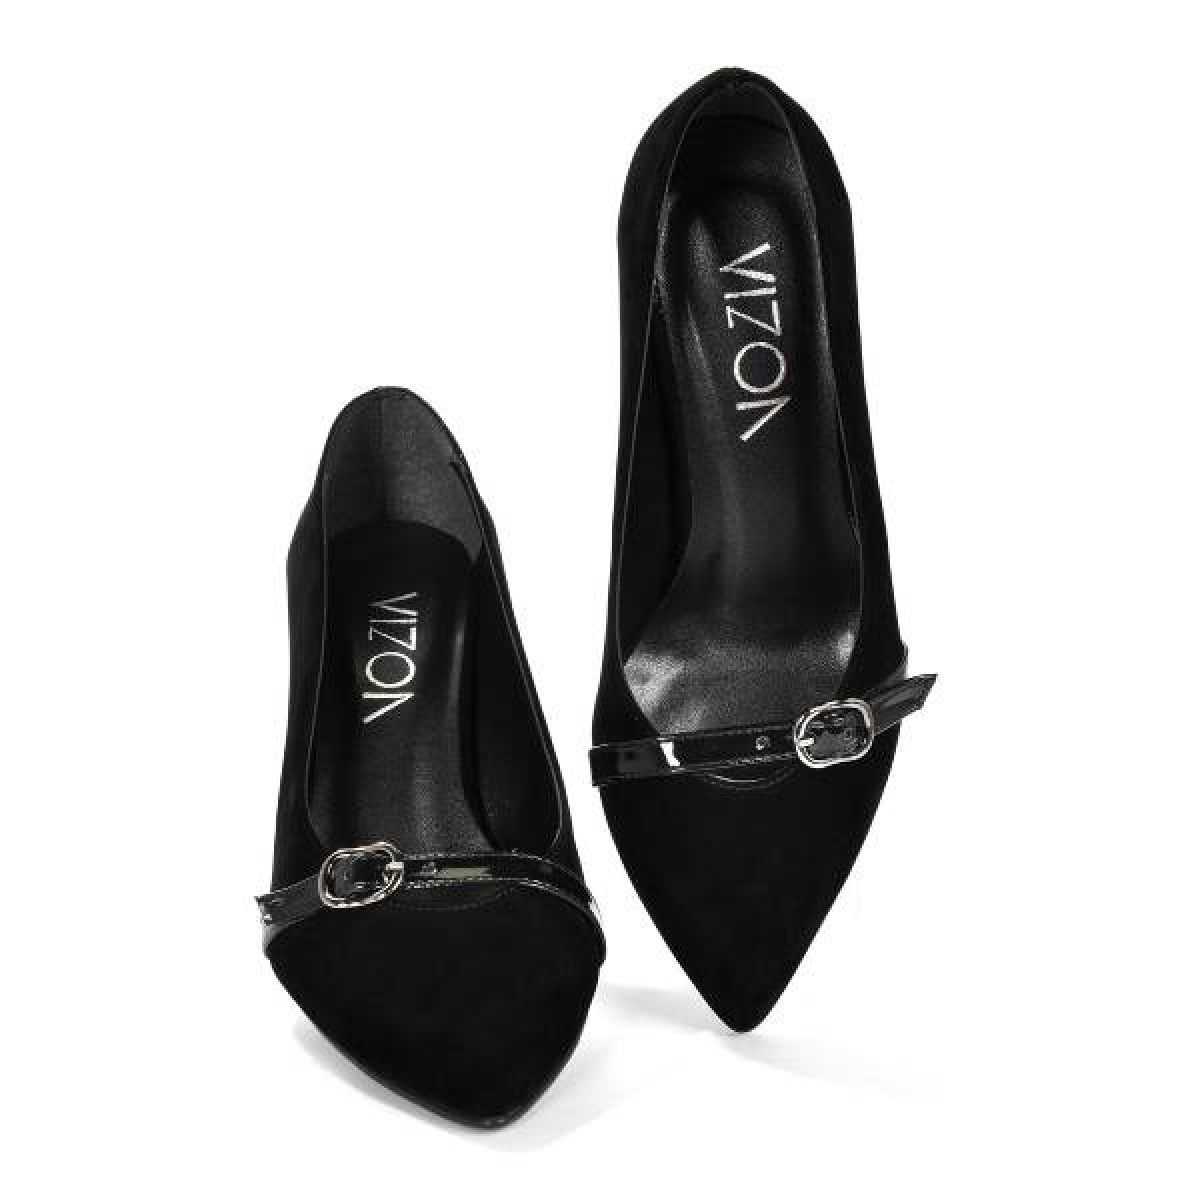 Flo Kadın  Siyah-Süet Klasik Topuklu Ayakkabı VZN19-110K. 7